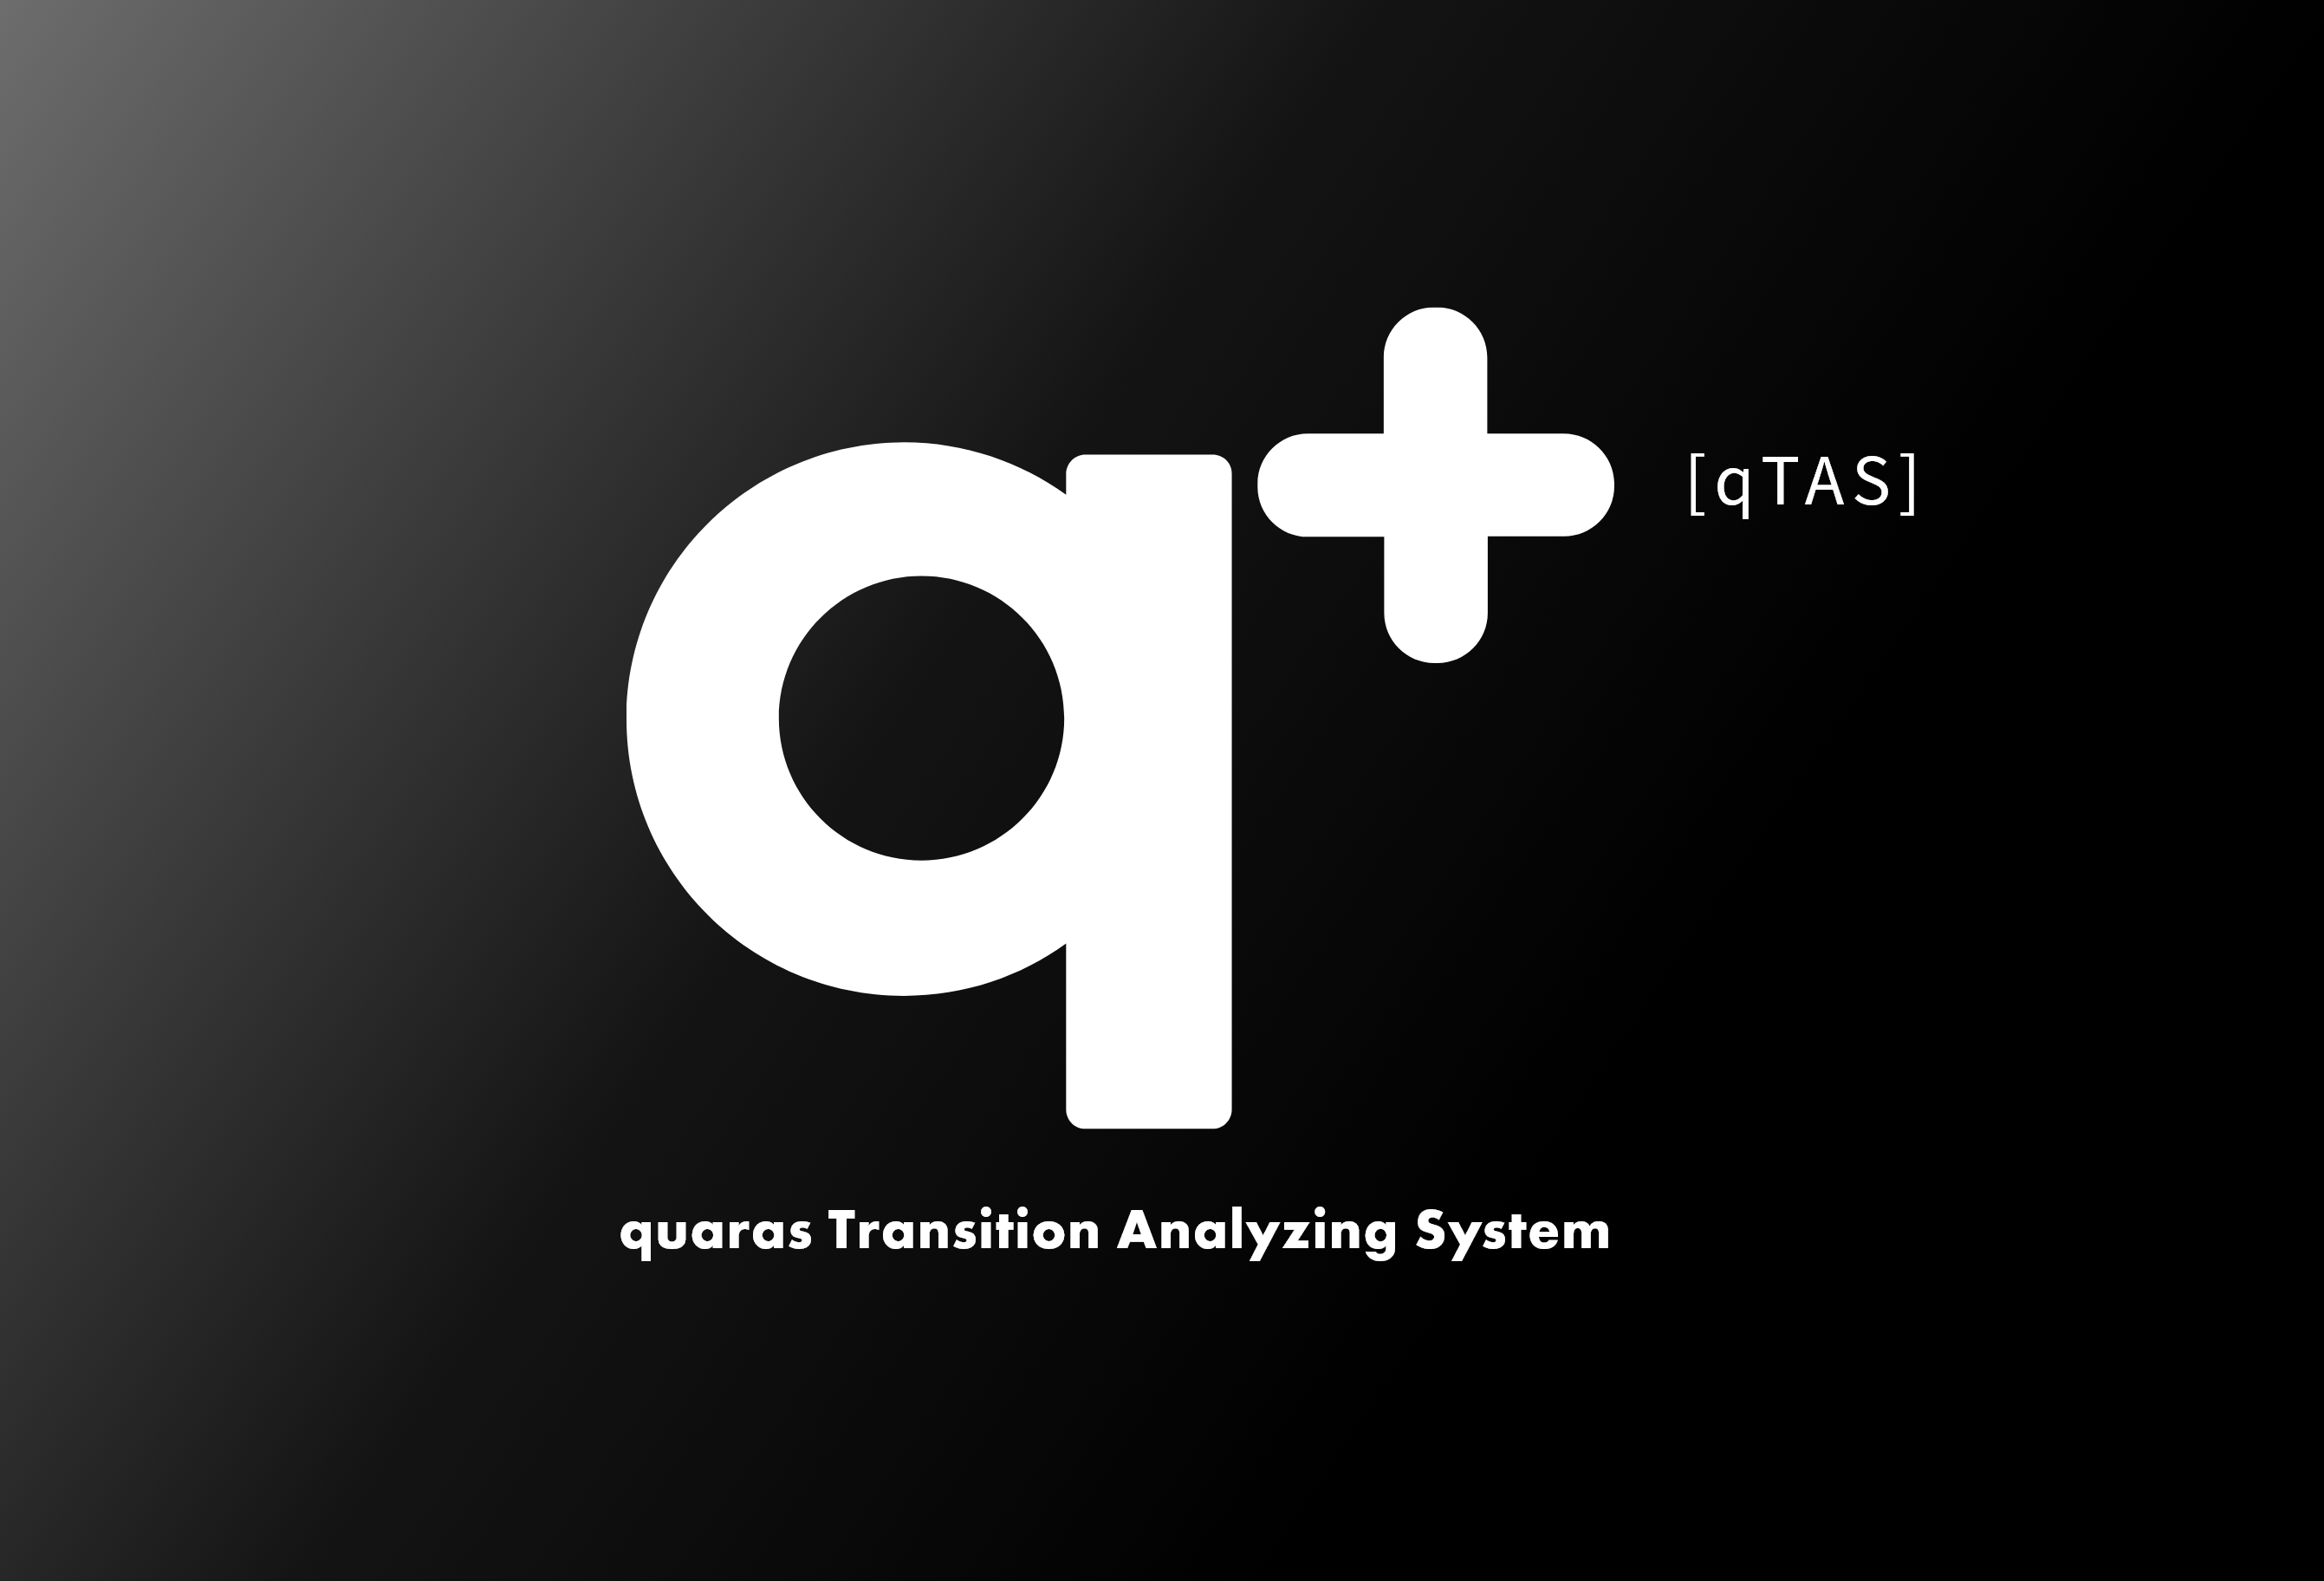 q+[qTAS] quaras Transition Analyzing System